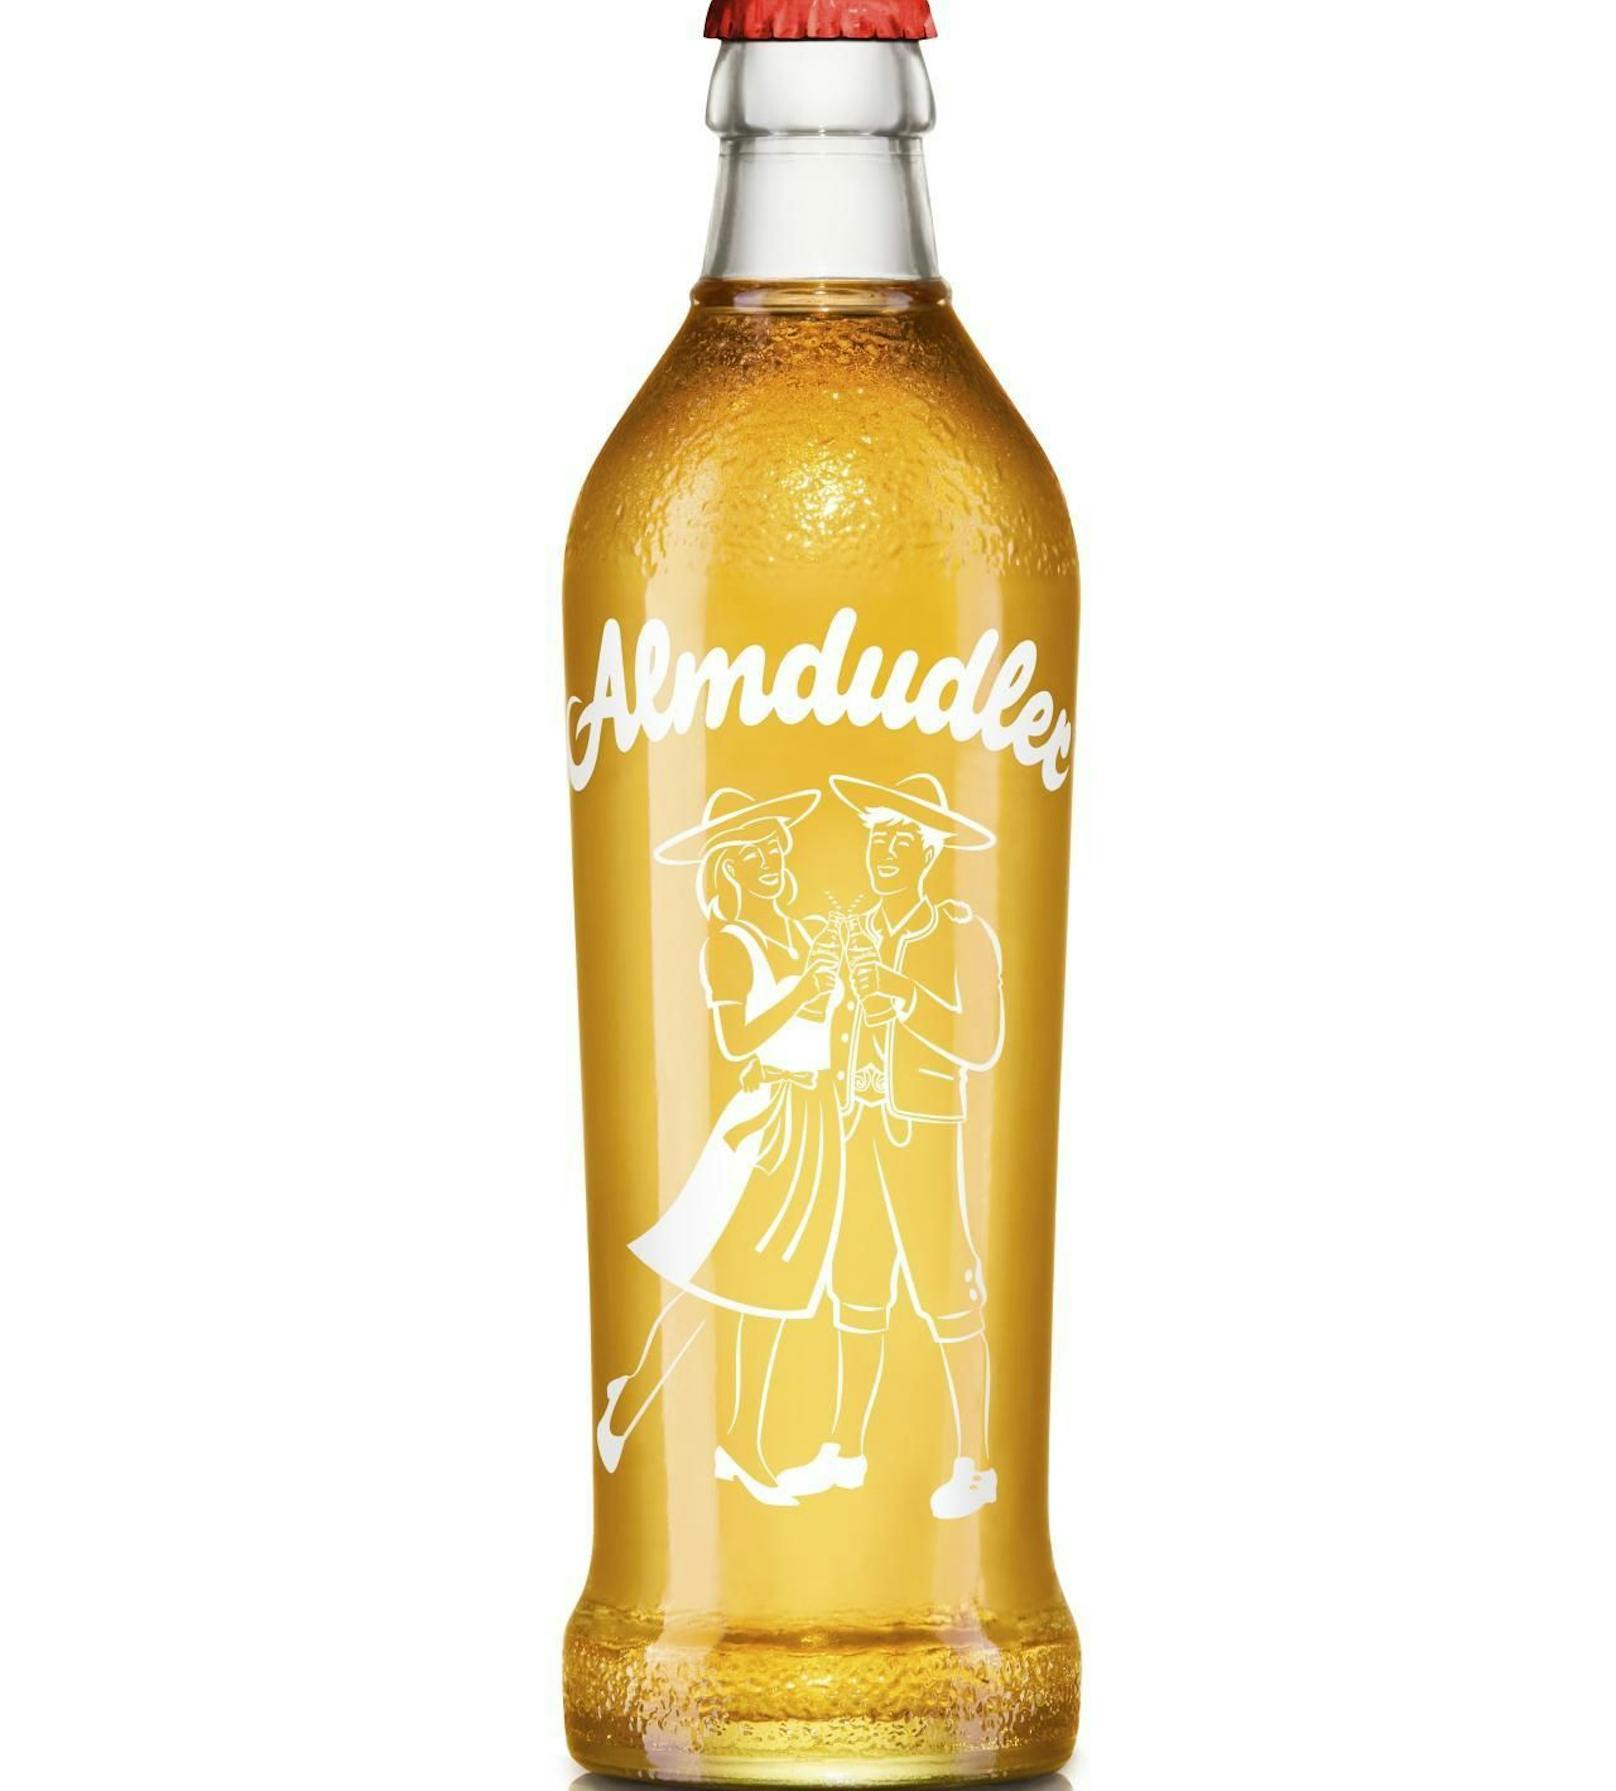 Das Markenzeichen von Almdudler ist seit jeher ein Trachtenpärchen. 